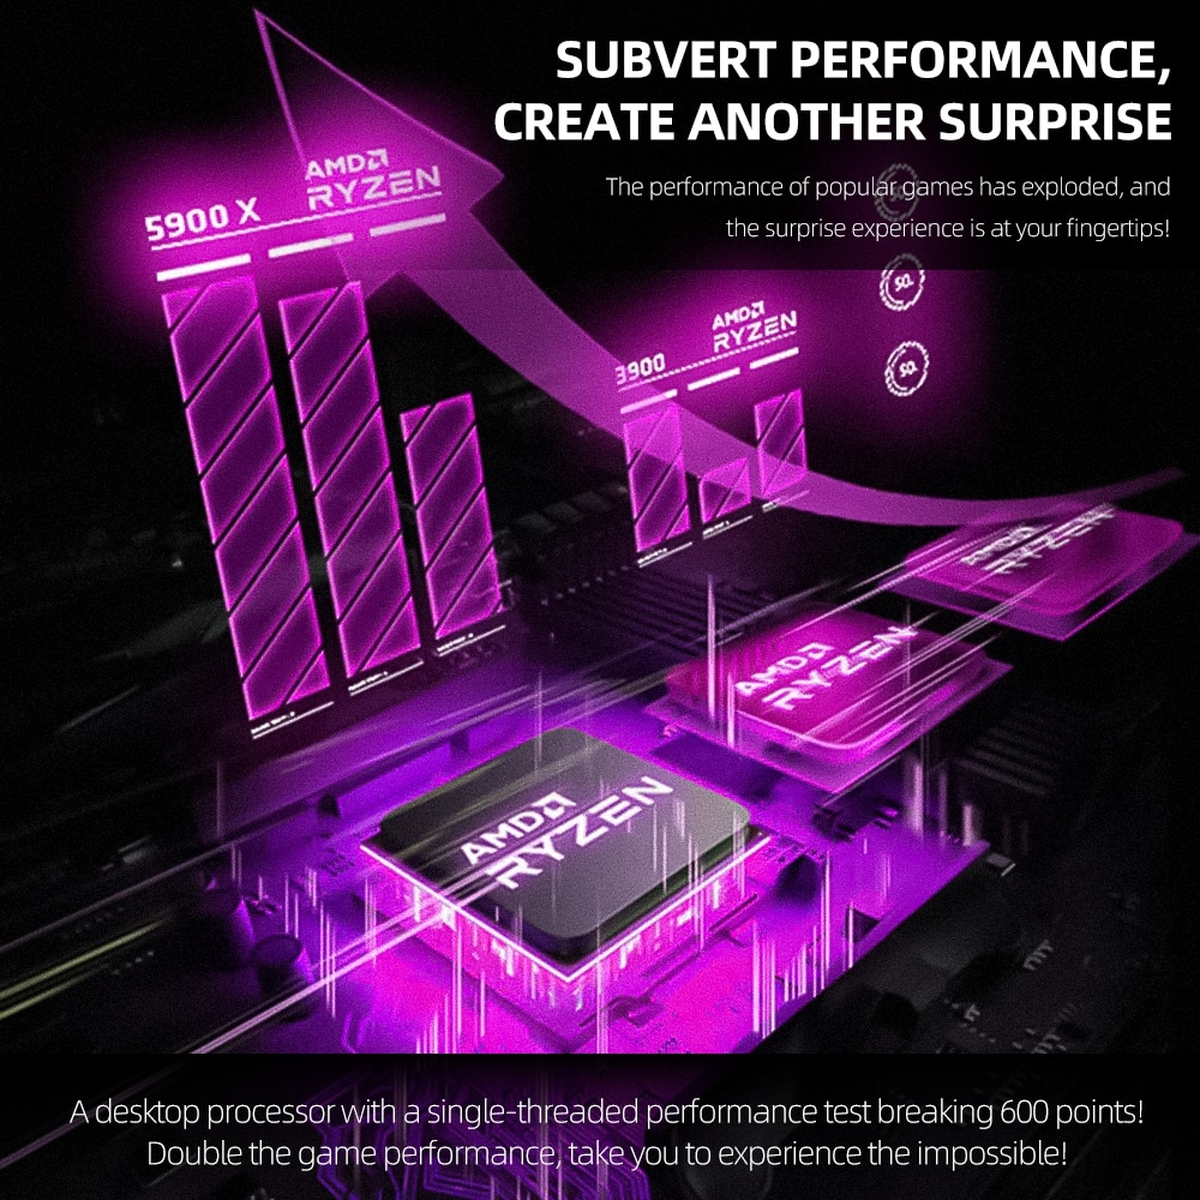 Processador AMD Ryzen 9 5900X: Melhores preços e informações